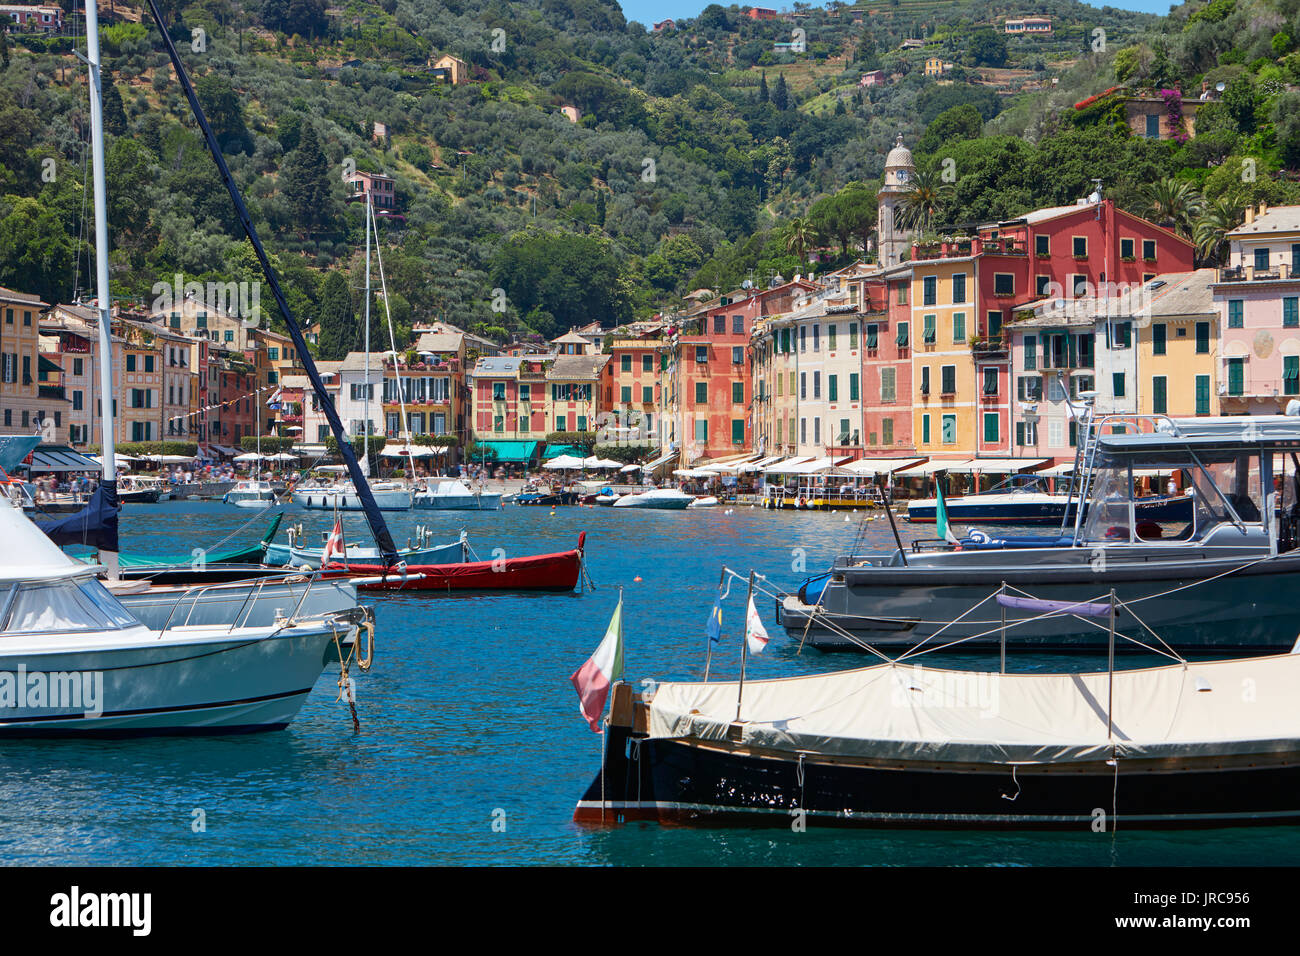 Portofino harbour village magnifique typique avec ses maisons colorées en Italie, sur la côte de la mer de Ligurie, province de Gênes Banque D'Images